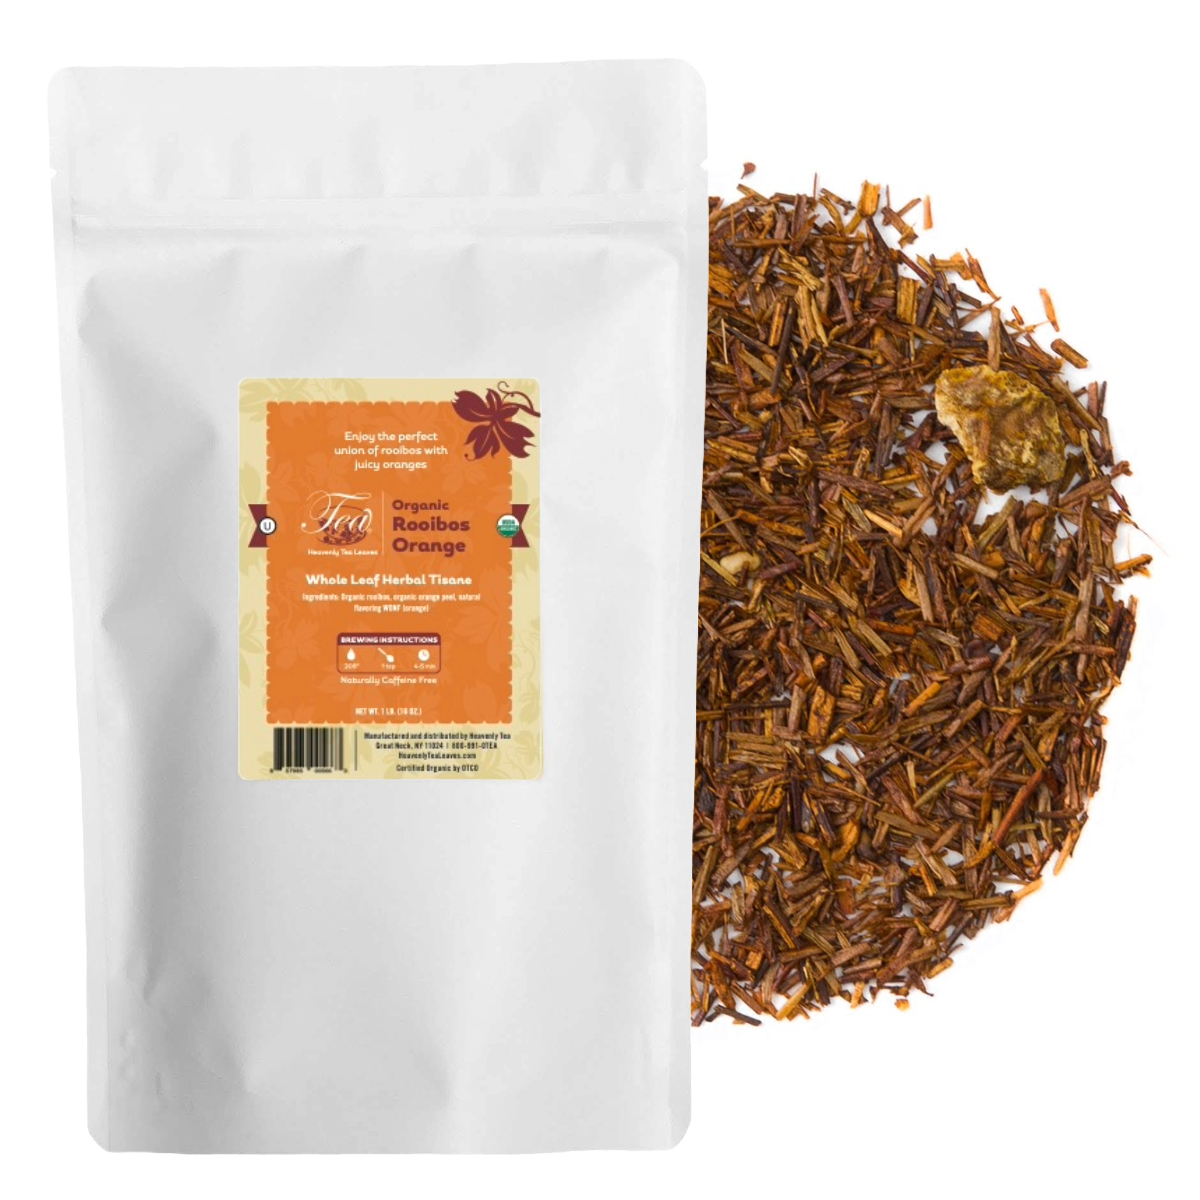 Organic Rooibos Orange - Bulk Loose Leaf Herbal Tisane | Heavenly Tea Leaves